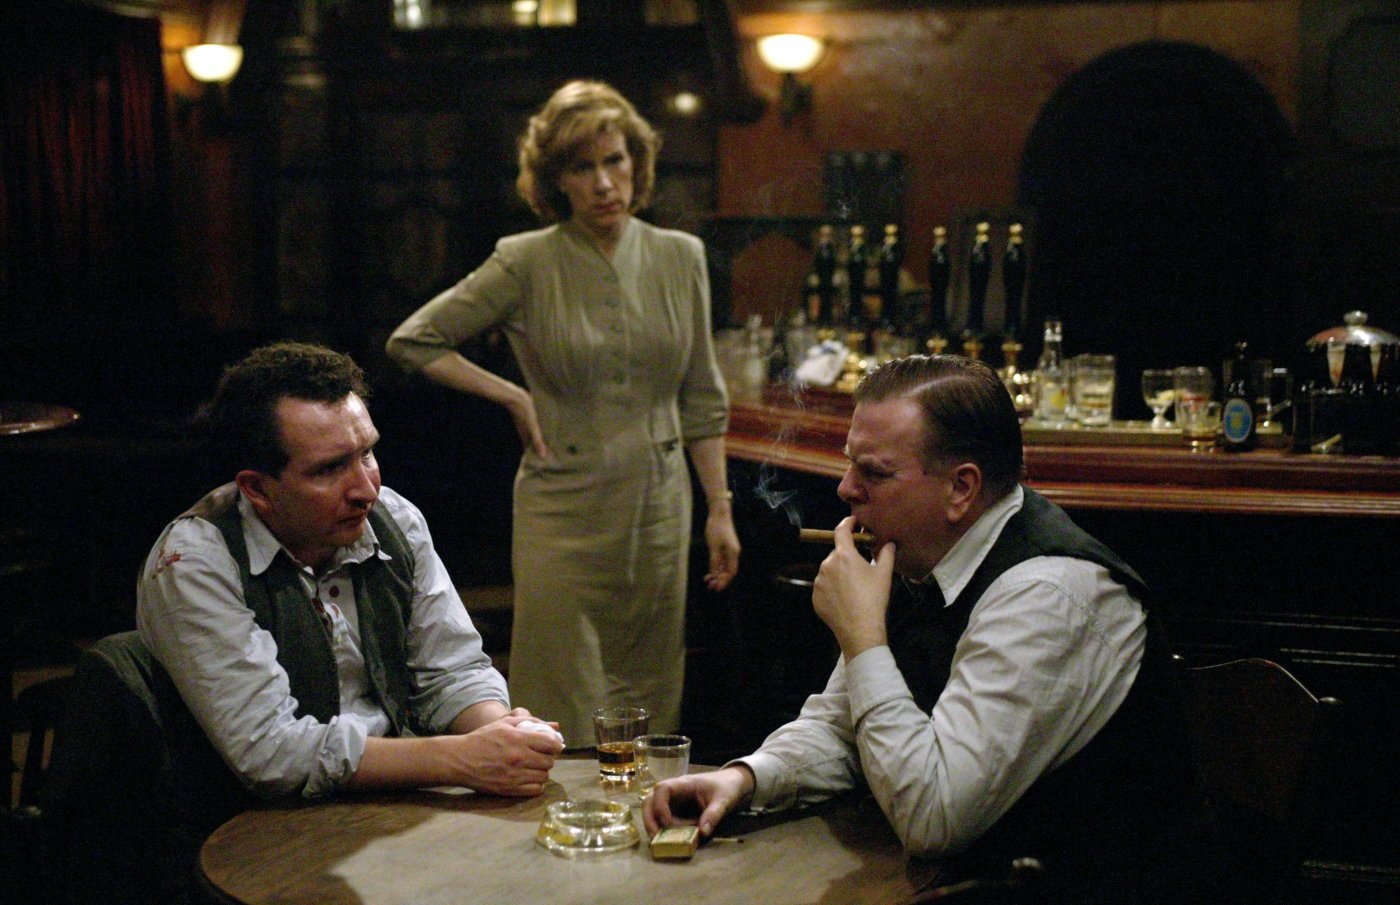 Кадр из фильма "Последний палач", где Пирпойнт и Корбитт пьют в п...